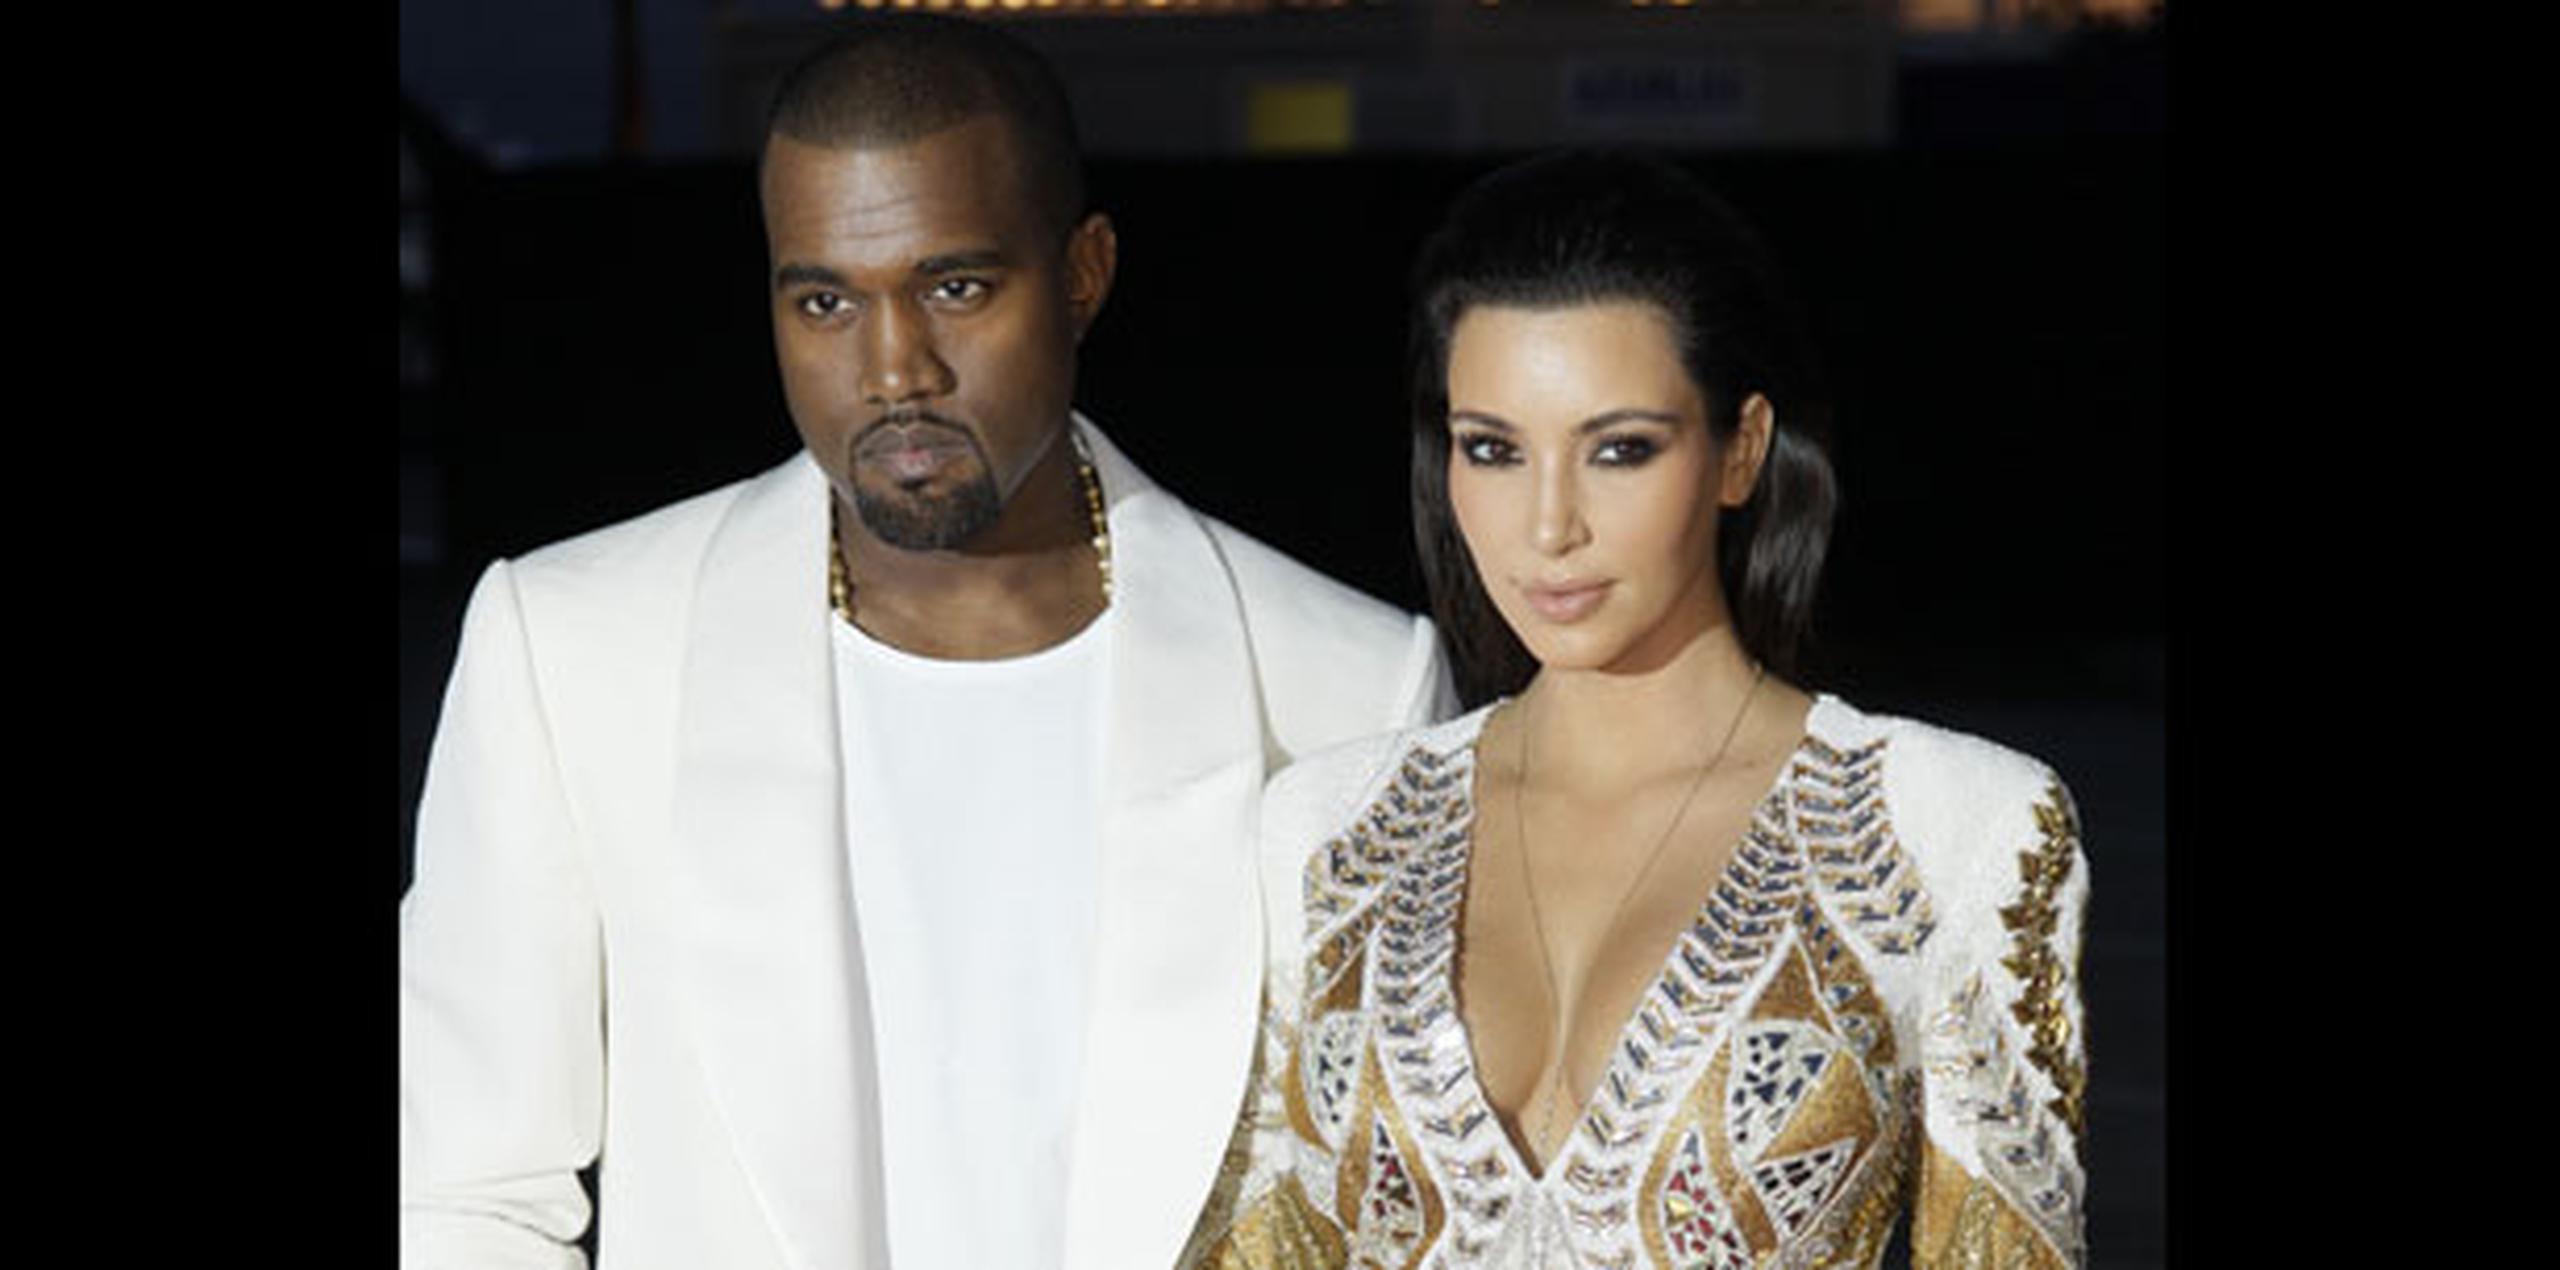 Saint es el segundo hijo de Kardashian con el cantante Kanye West. (Archivo)